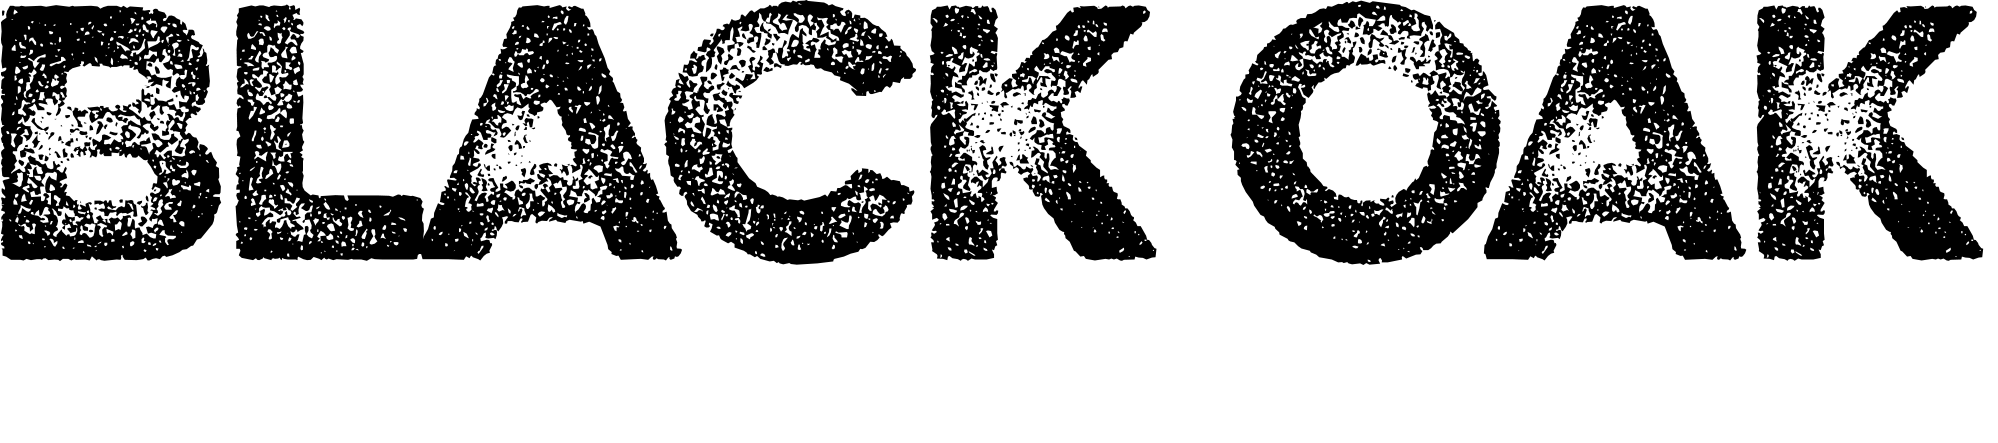 Black Oak Arkansas typography